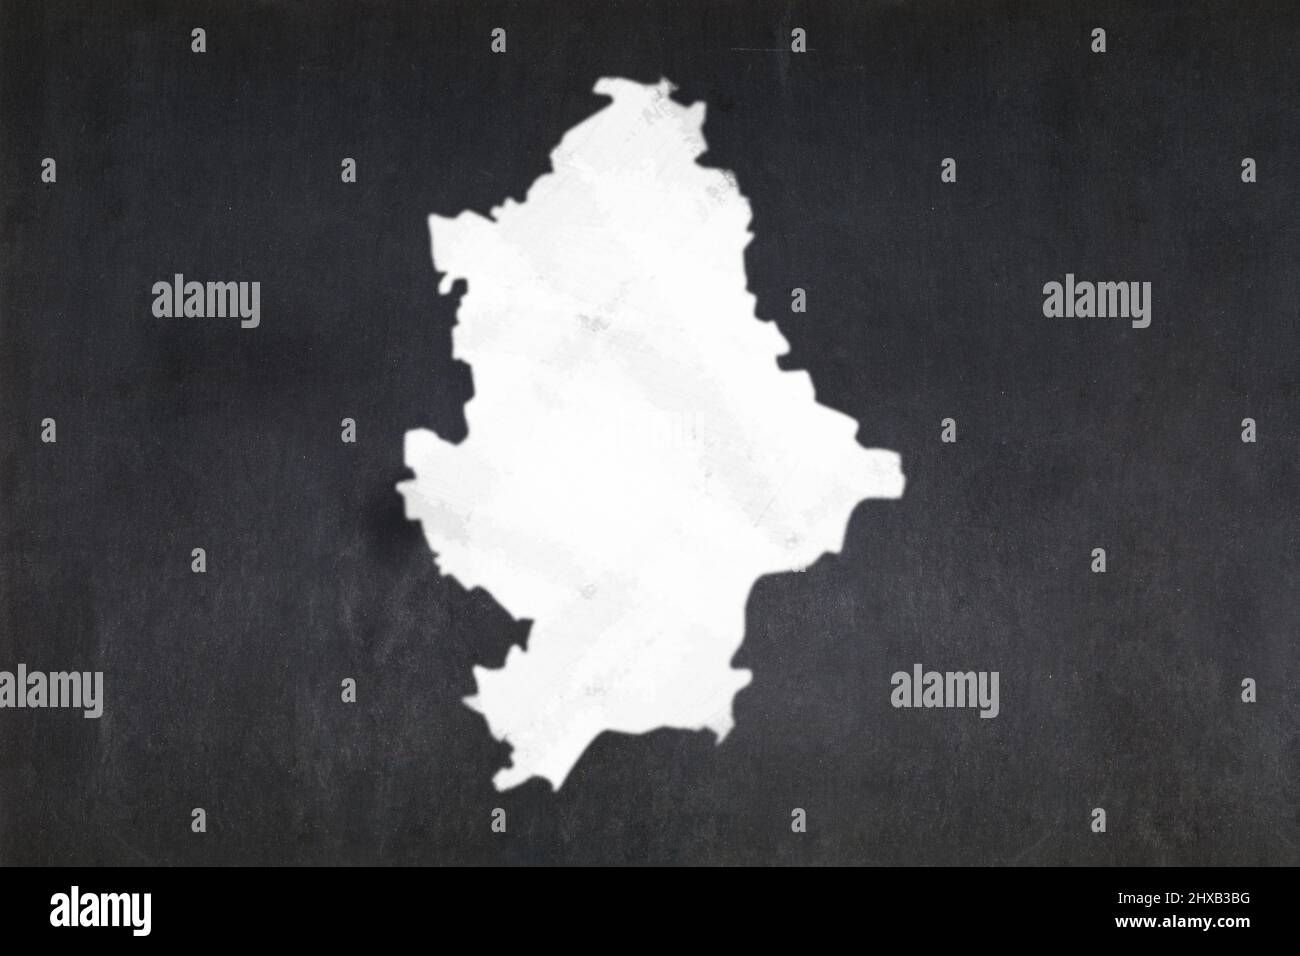 Lavagna con una mappa di Donetsk disegnata al centro. Foto Stock